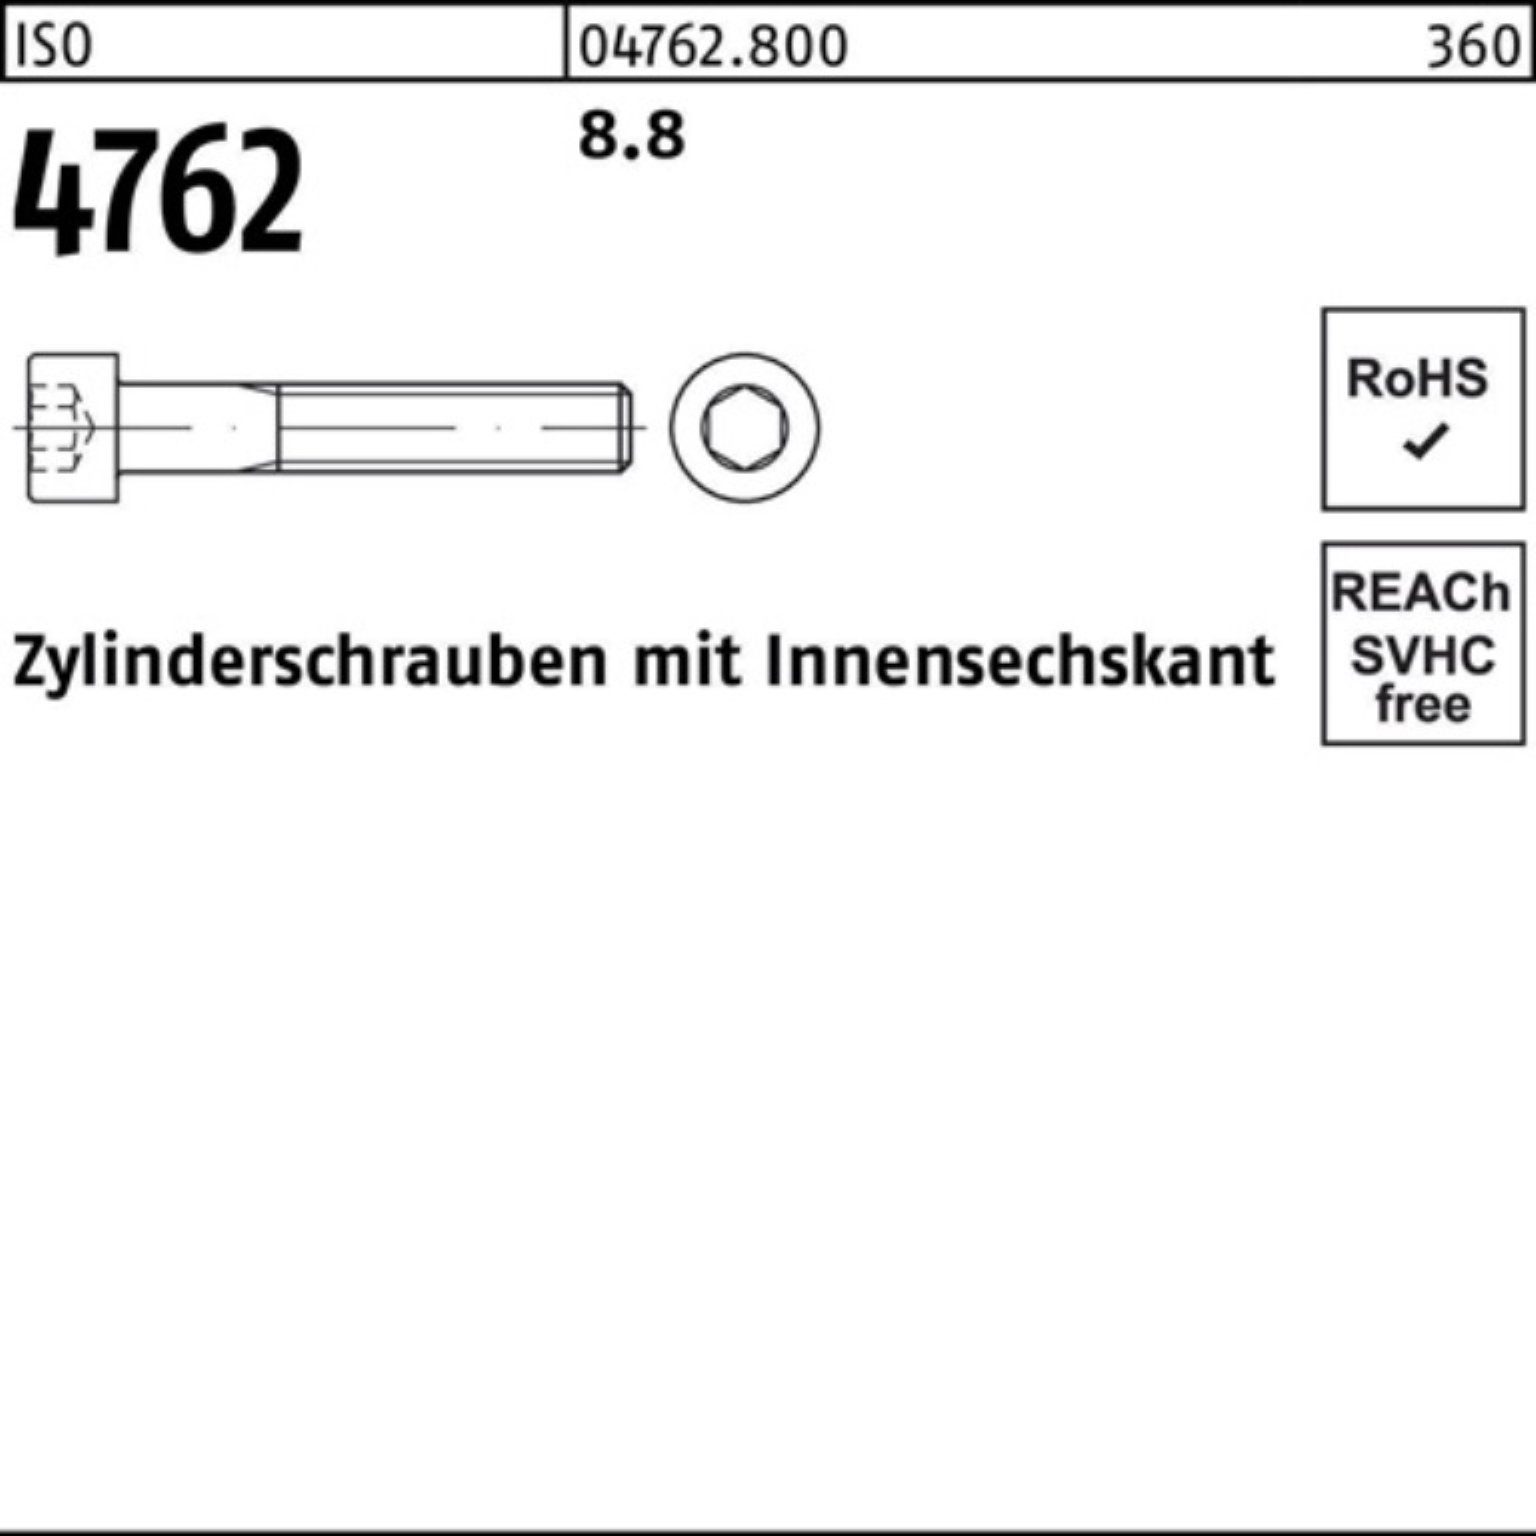 Reyher Zylinderschraube 100er 200 Stück 4762 8.8 Pack Innen-6kt I ISO Zylinderschraube M24x 1